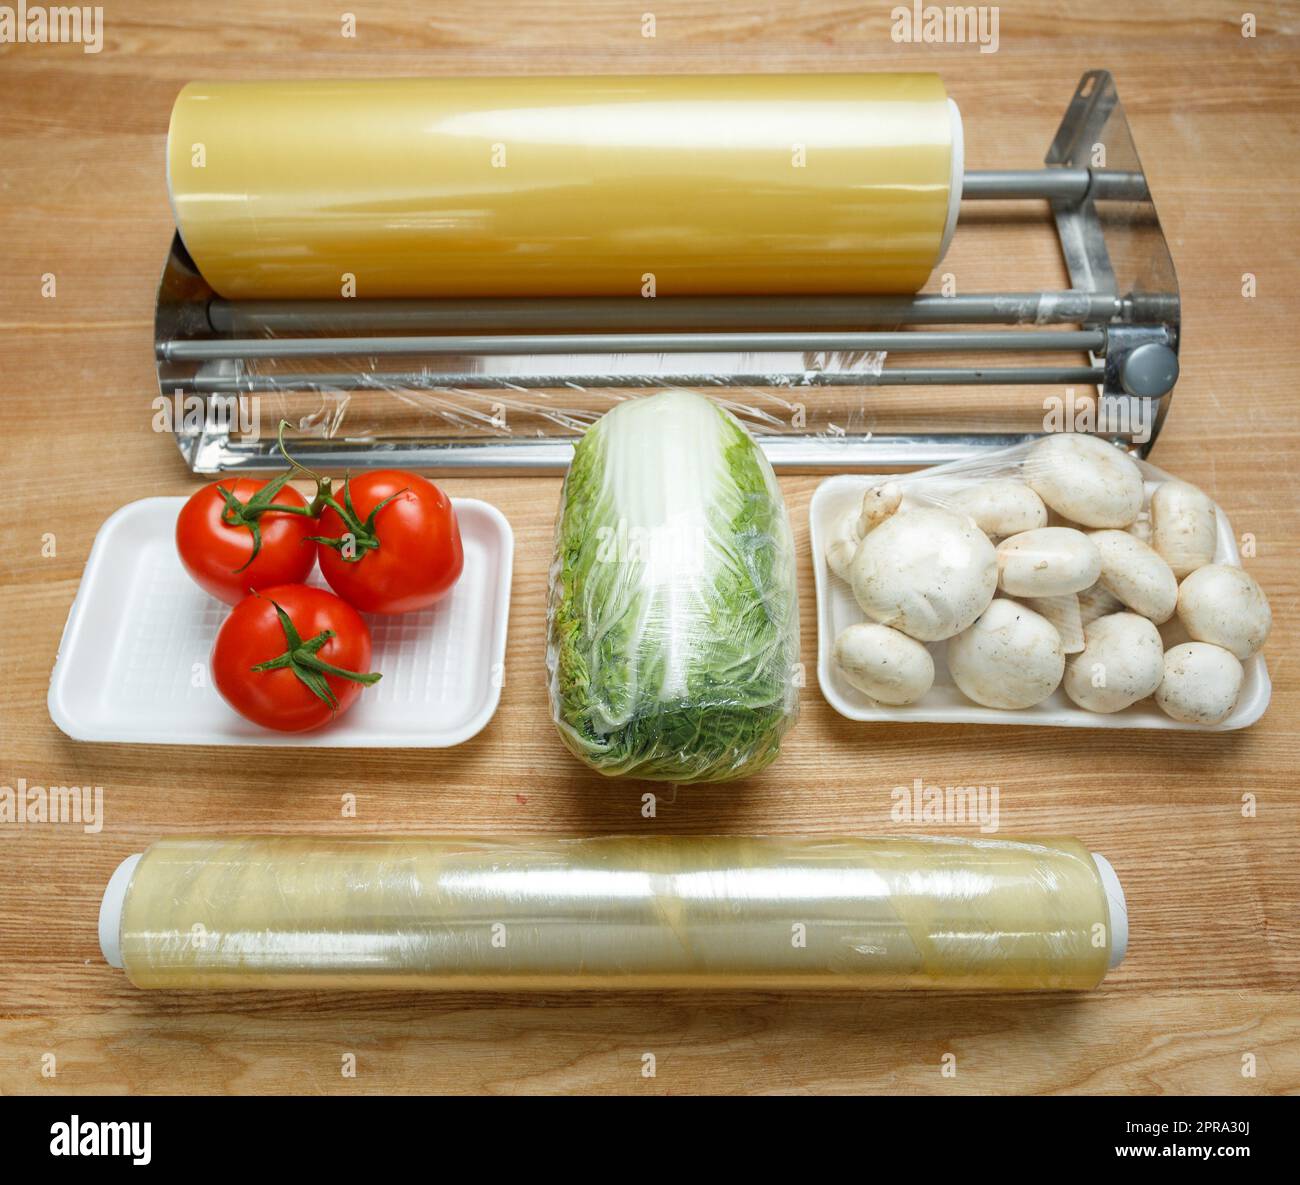 Rotoli di pellicola di polietilene trasparente per l'imballaggio di  alimenti sul tavolo con verdure Foto stock - Alamy